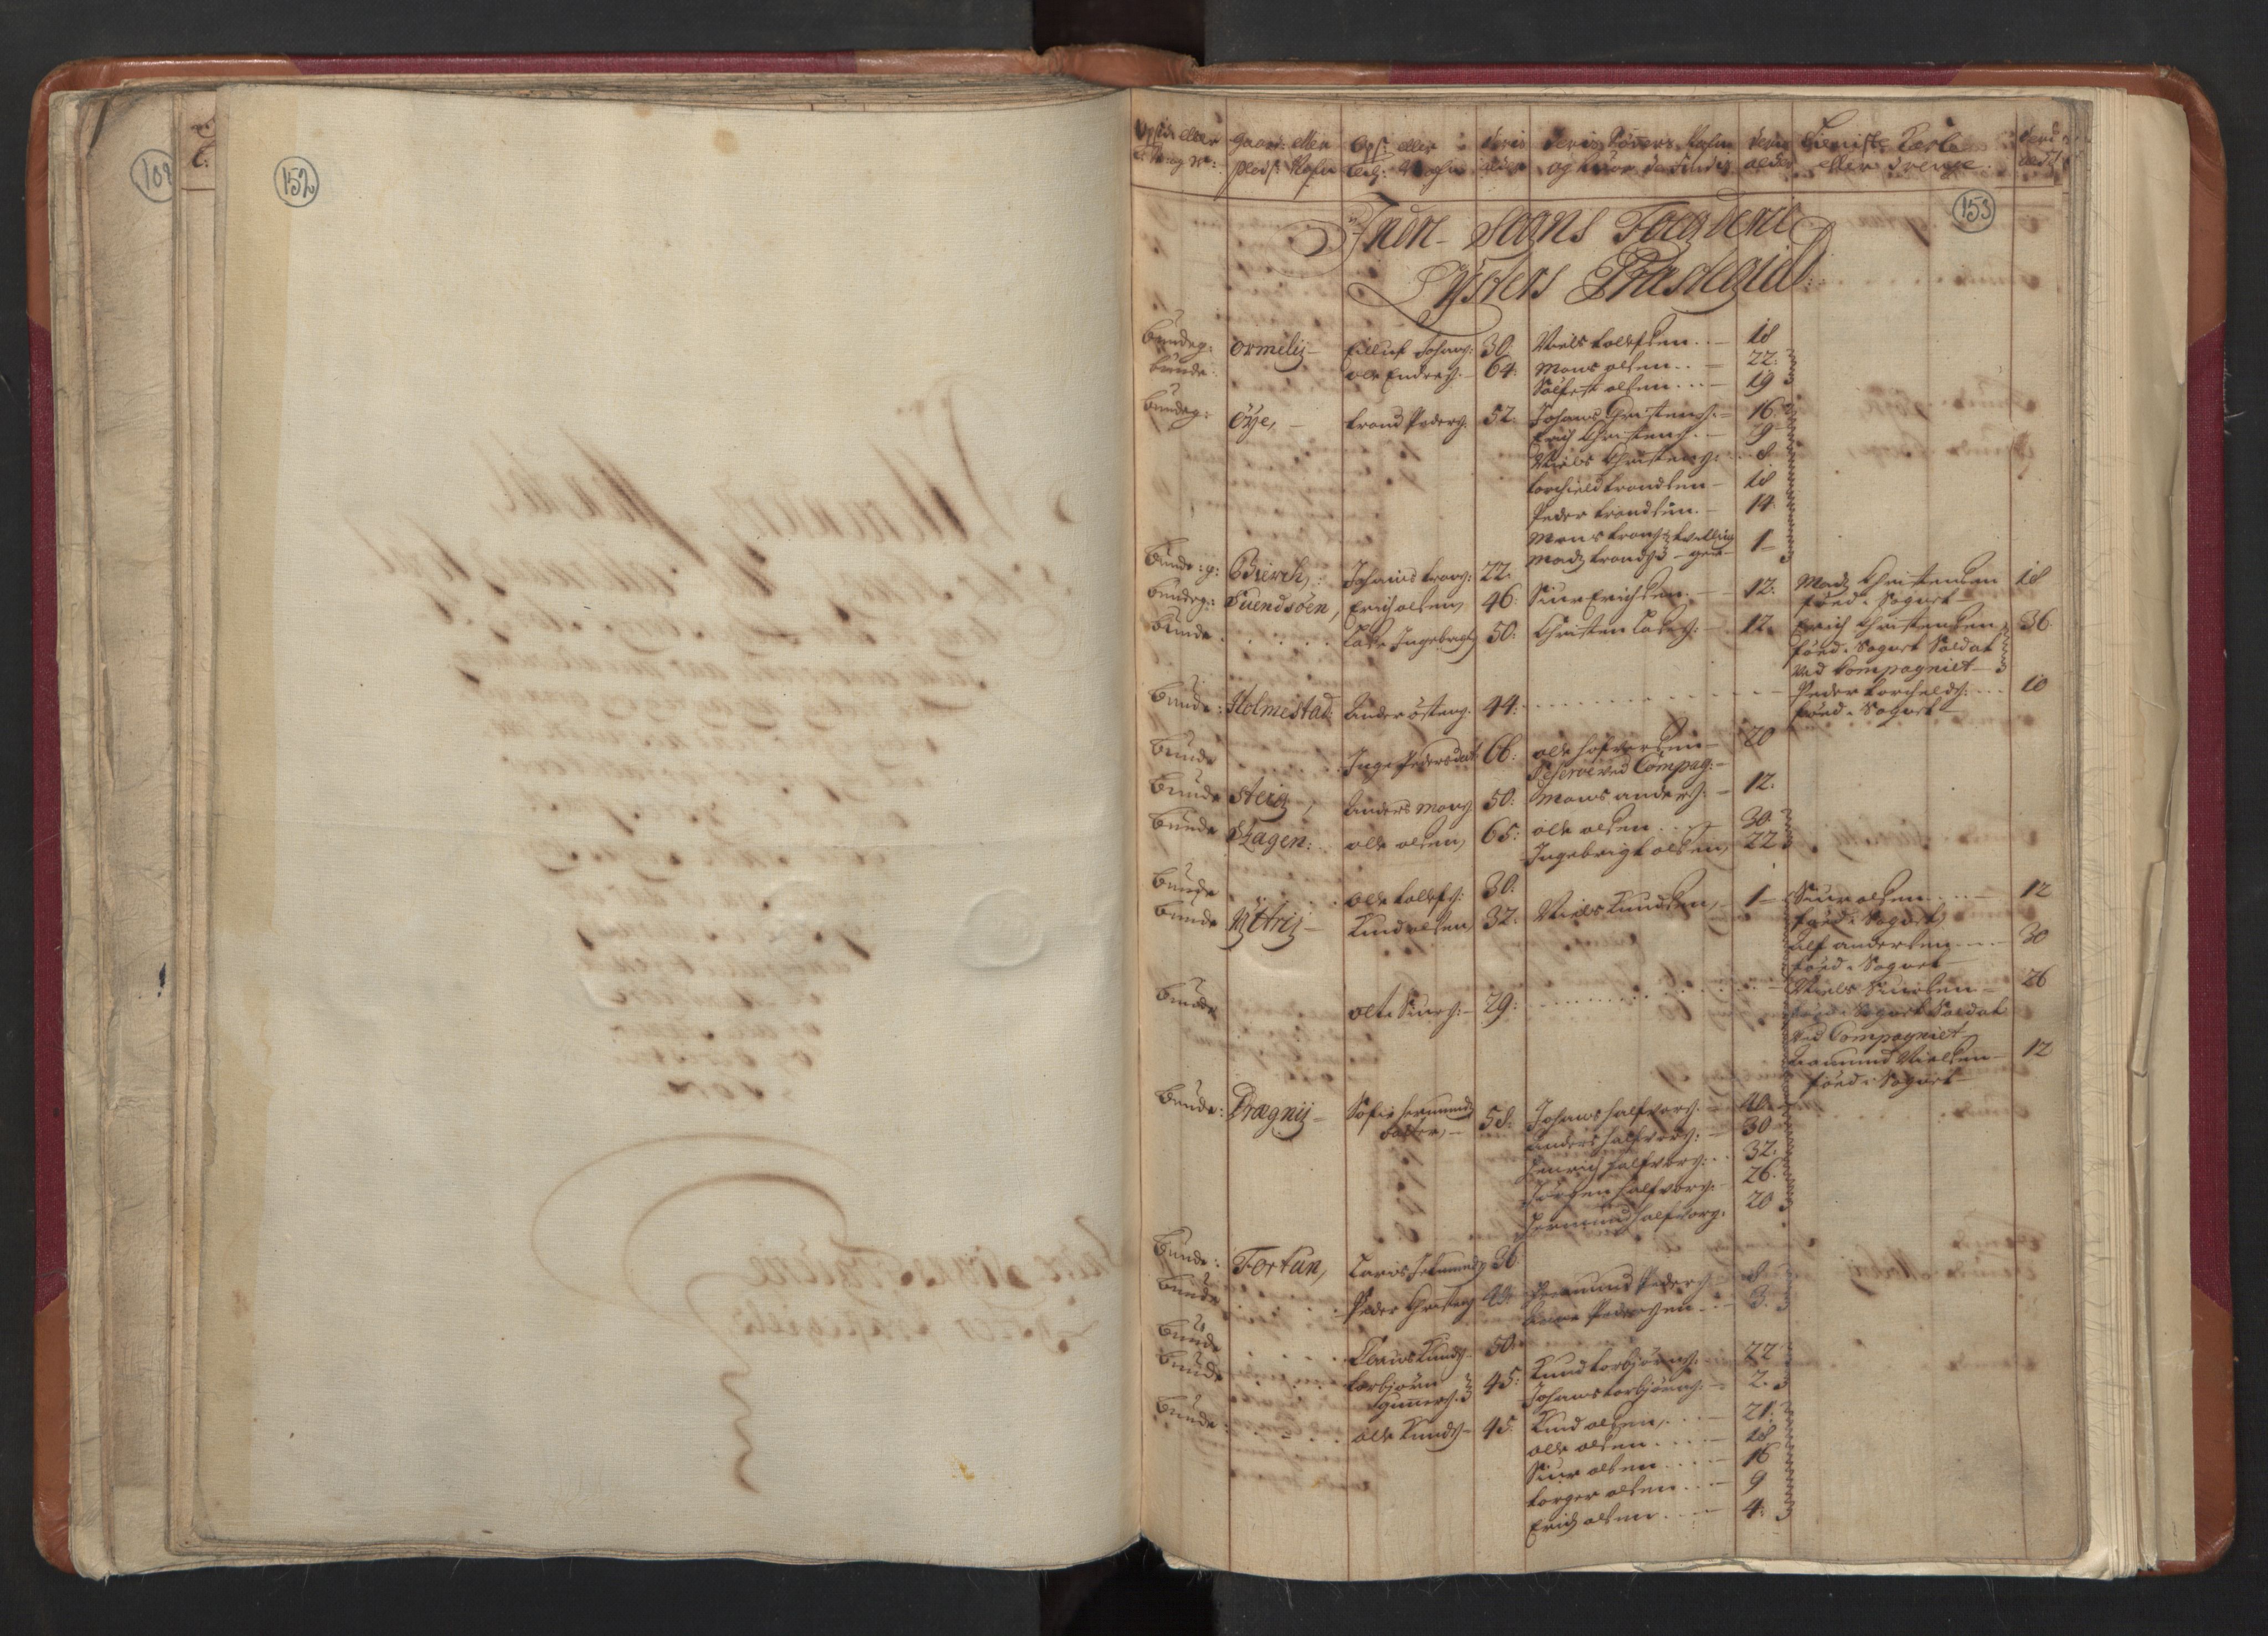 RA, Manntallet 1701, nr. 8: Ytre Sogn fogderi og Indre Sogn fogderi, 1701, s. 152-153